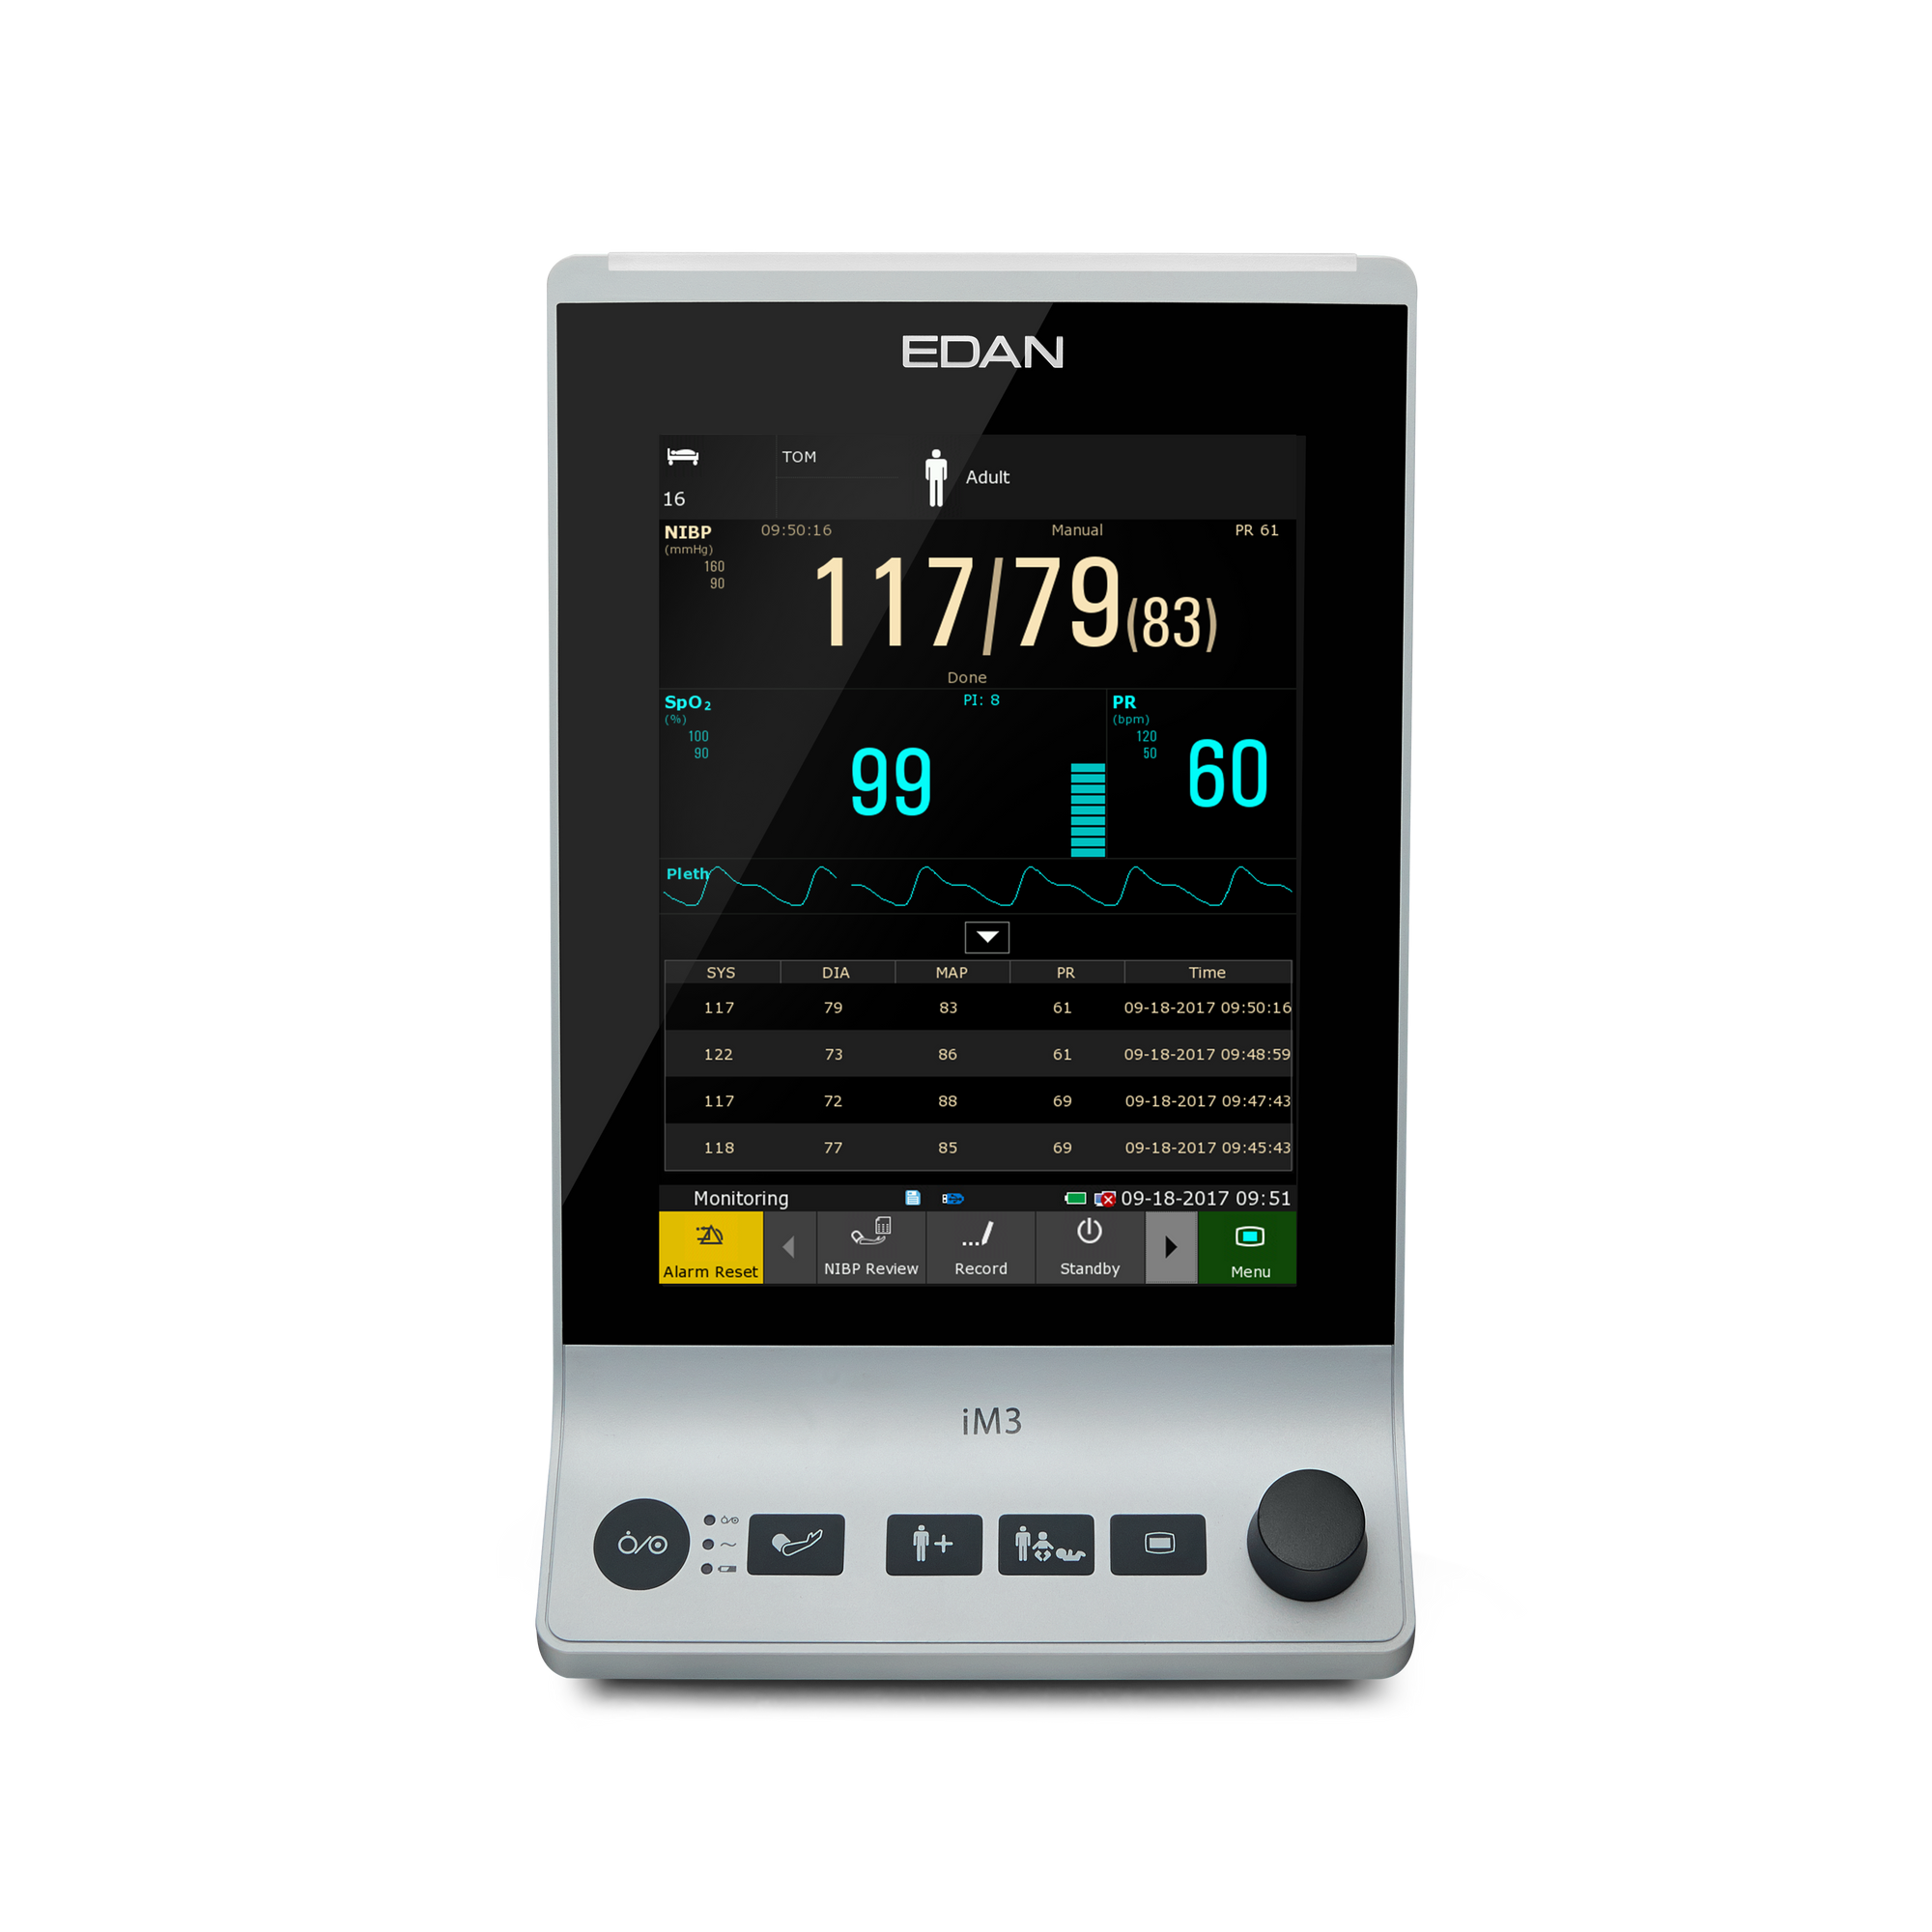 EDAN iM3 Patientenmonitor mit Touchscreen